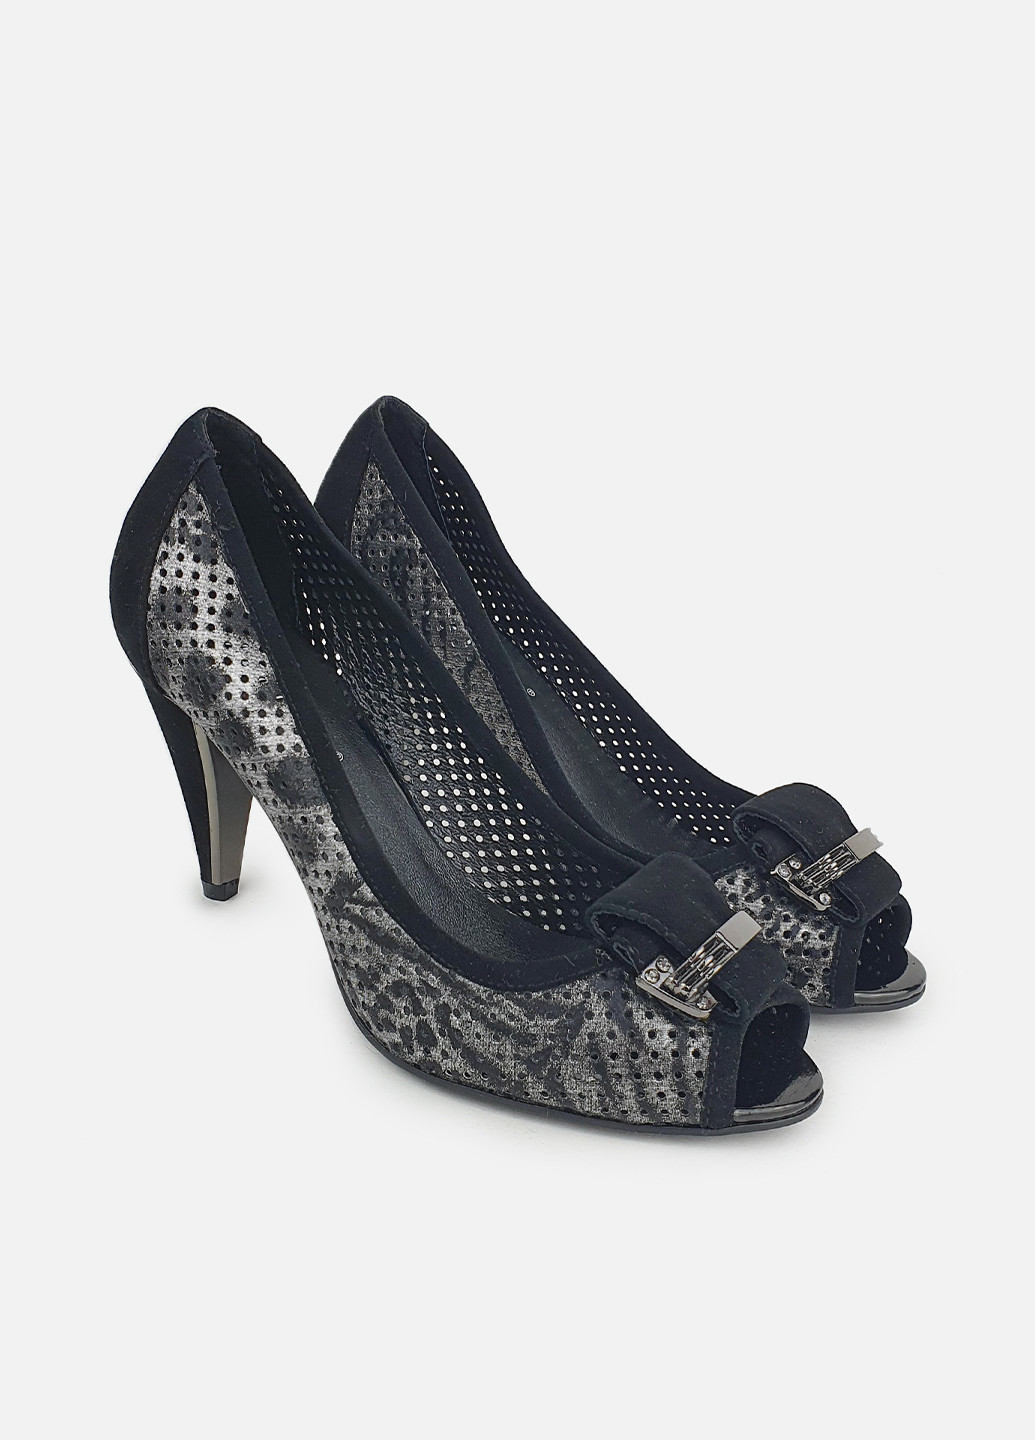 Кожаные женские туфли с перфорацией черные на среднем каблуке Maria Moro